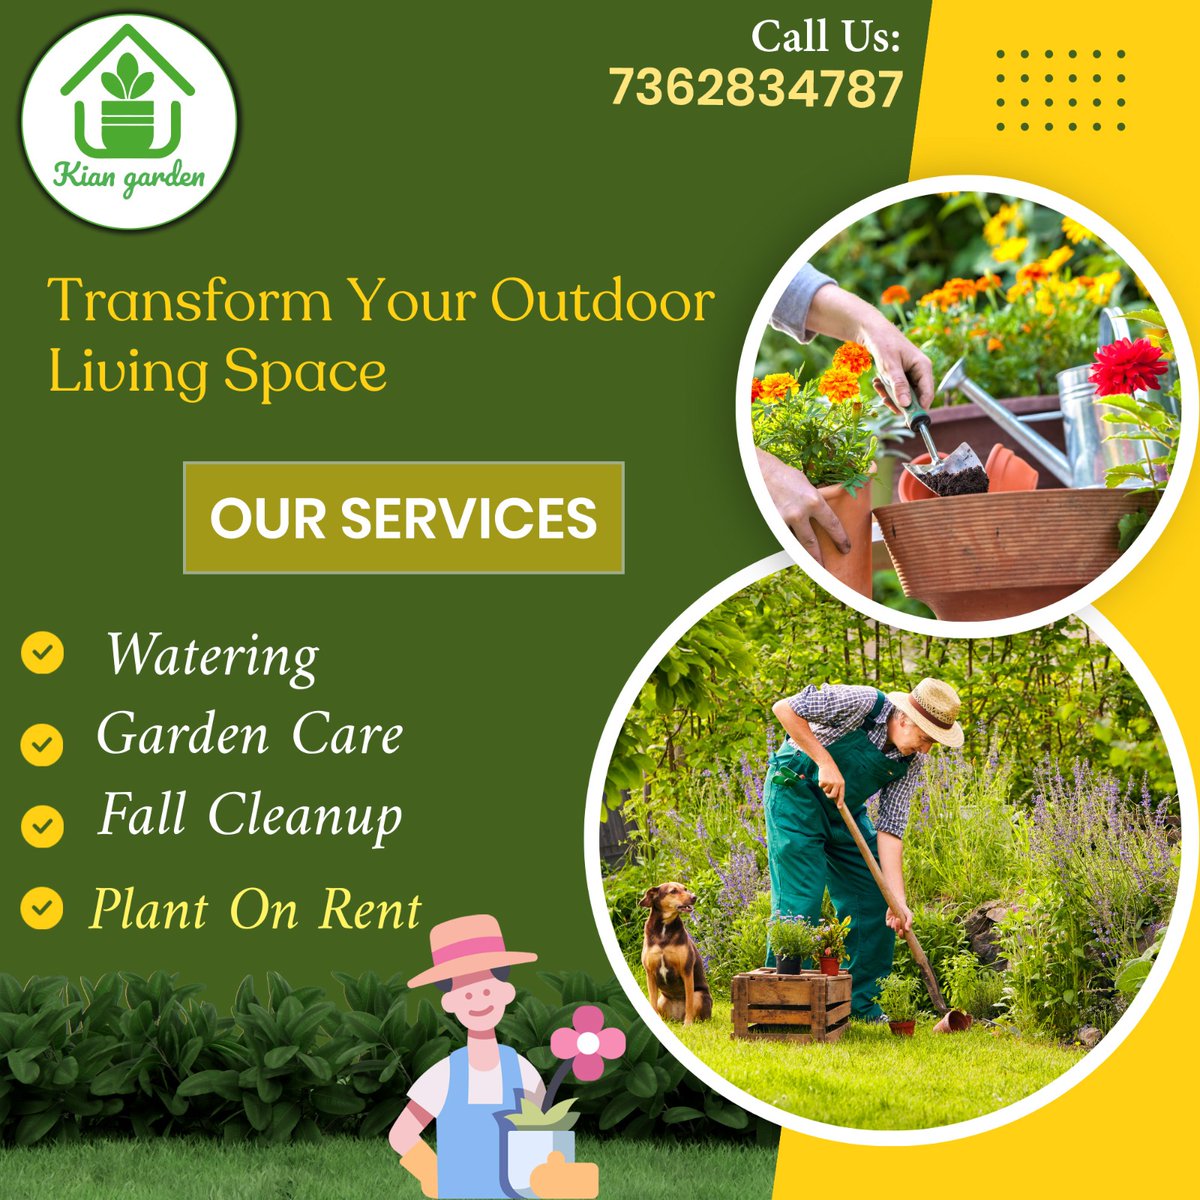 🌿 Welcome to Green Haven Gardening & Landscape Services! 🌿

𝐓𝐫𝐚𝐧𝐬𝐟𝐨𝐫𝐦𝐢𝐧𝐠 𝐲𝐨𝐮𝐫 𝐨𝐮𝐭𝐝𝐨𝐨𝐫 𝐬𝐩𝐚𝐜𝐞 𝐢𝐧𝐭𝐨 𝐚 𝐥𝐮𝐬𝐡 𝐨𝐚𝐬𝐢𝐬 𝐢𝐬 𝐨𝐮𝐫 𝐩𝐚𝐬𝐬𝐢𝐨𝐧!🌷

#gardenarea #gardendecor #gardendesignideas #lanscaping #outdoordecoration #outdoor